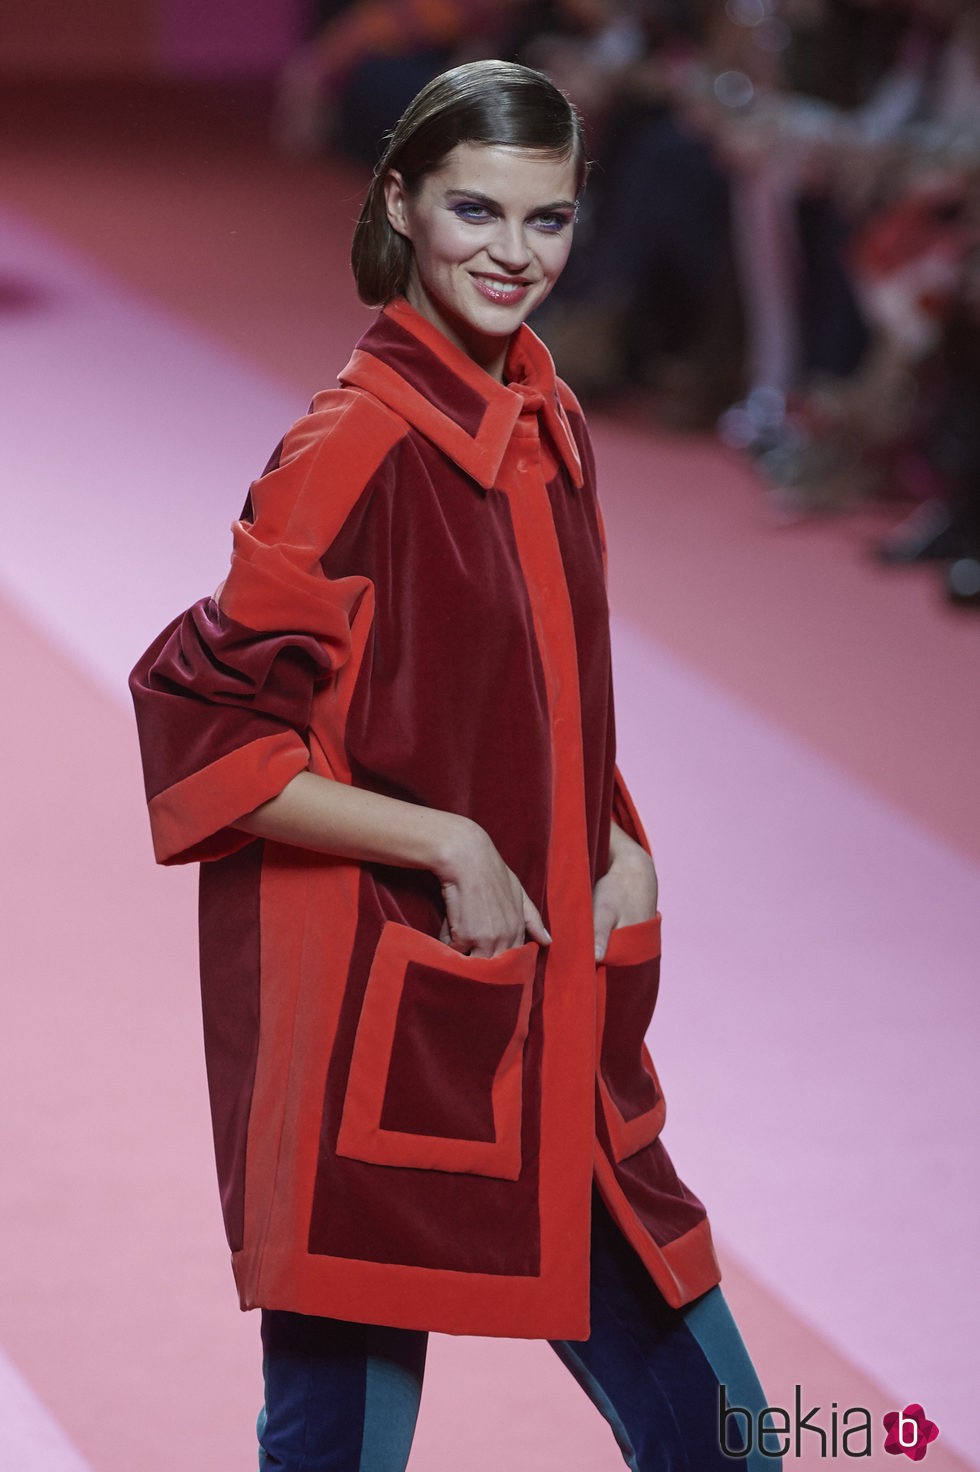 Abrigo de terciopelo rojo y granate de Agatha Ruiz de la Prada para otoño/invierno 2015/2016 en Madrid Fashion Week